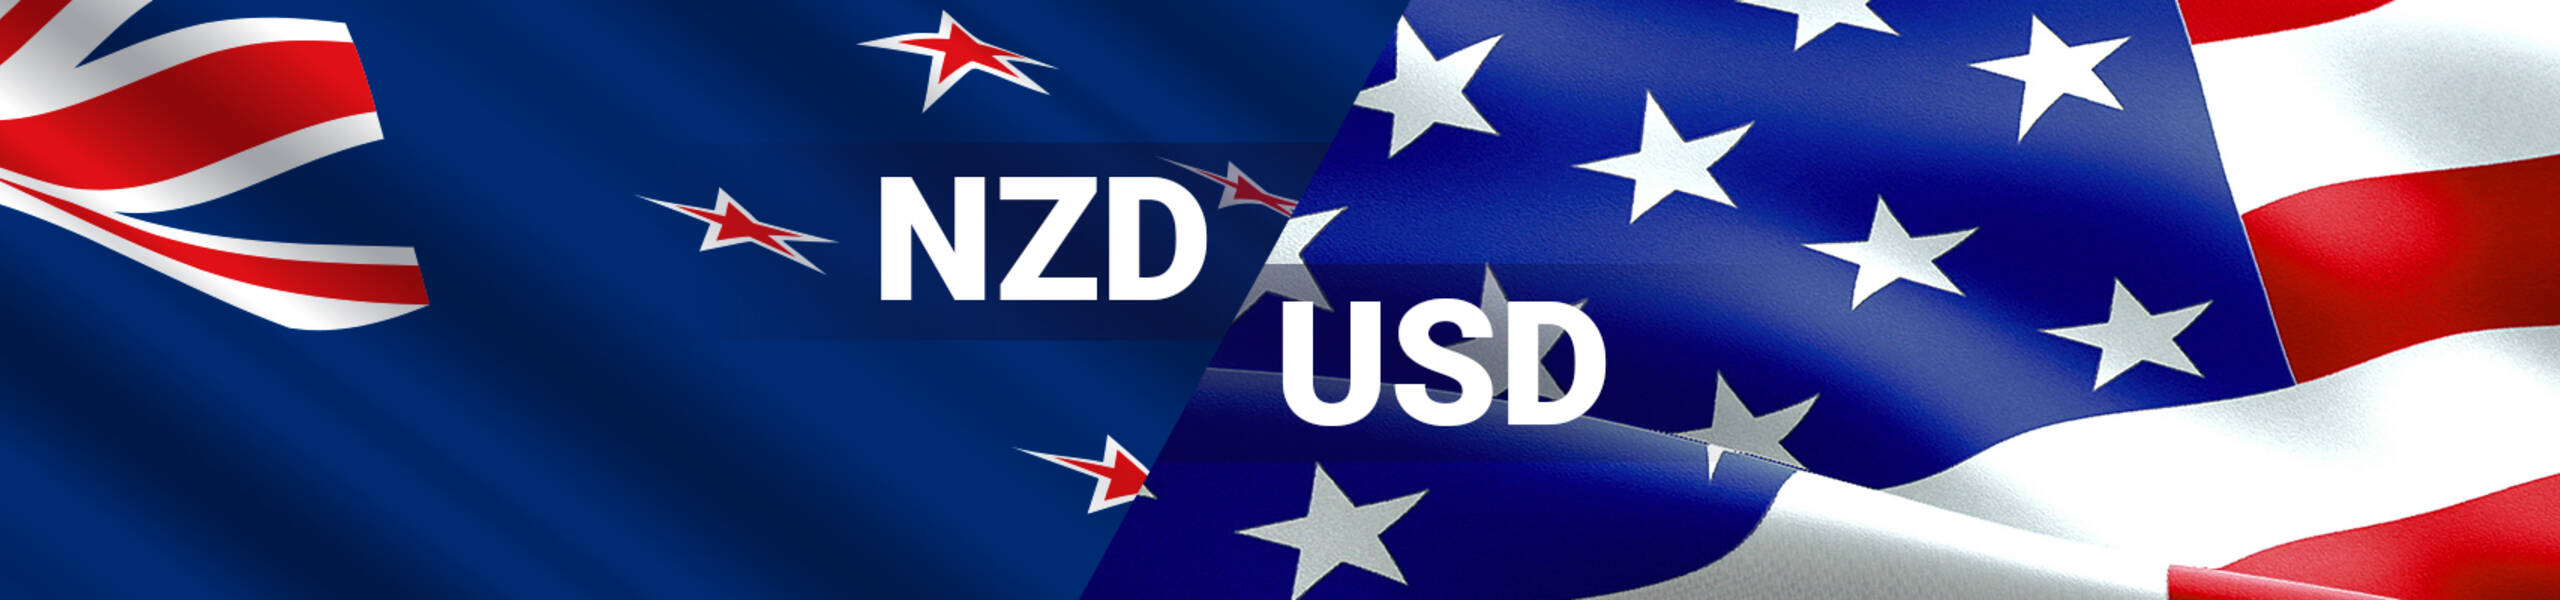 NZD/USD aproximándose a una zona de corrección bajista